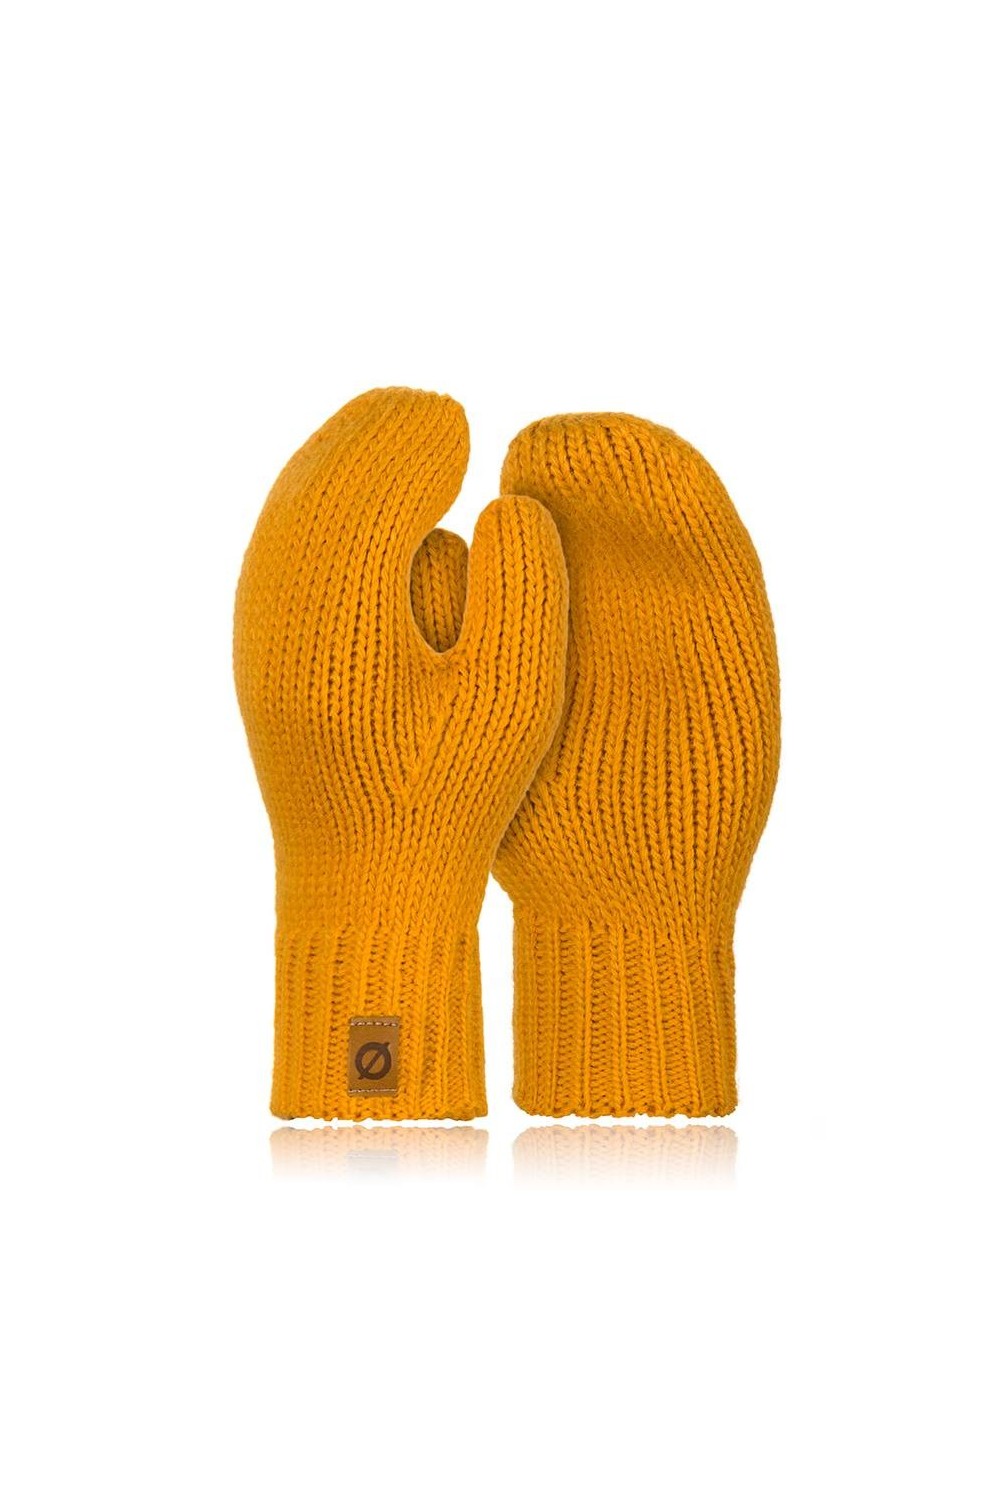 Ciepłe rękawiczki damskie zimowe brodrene r02 miodowe